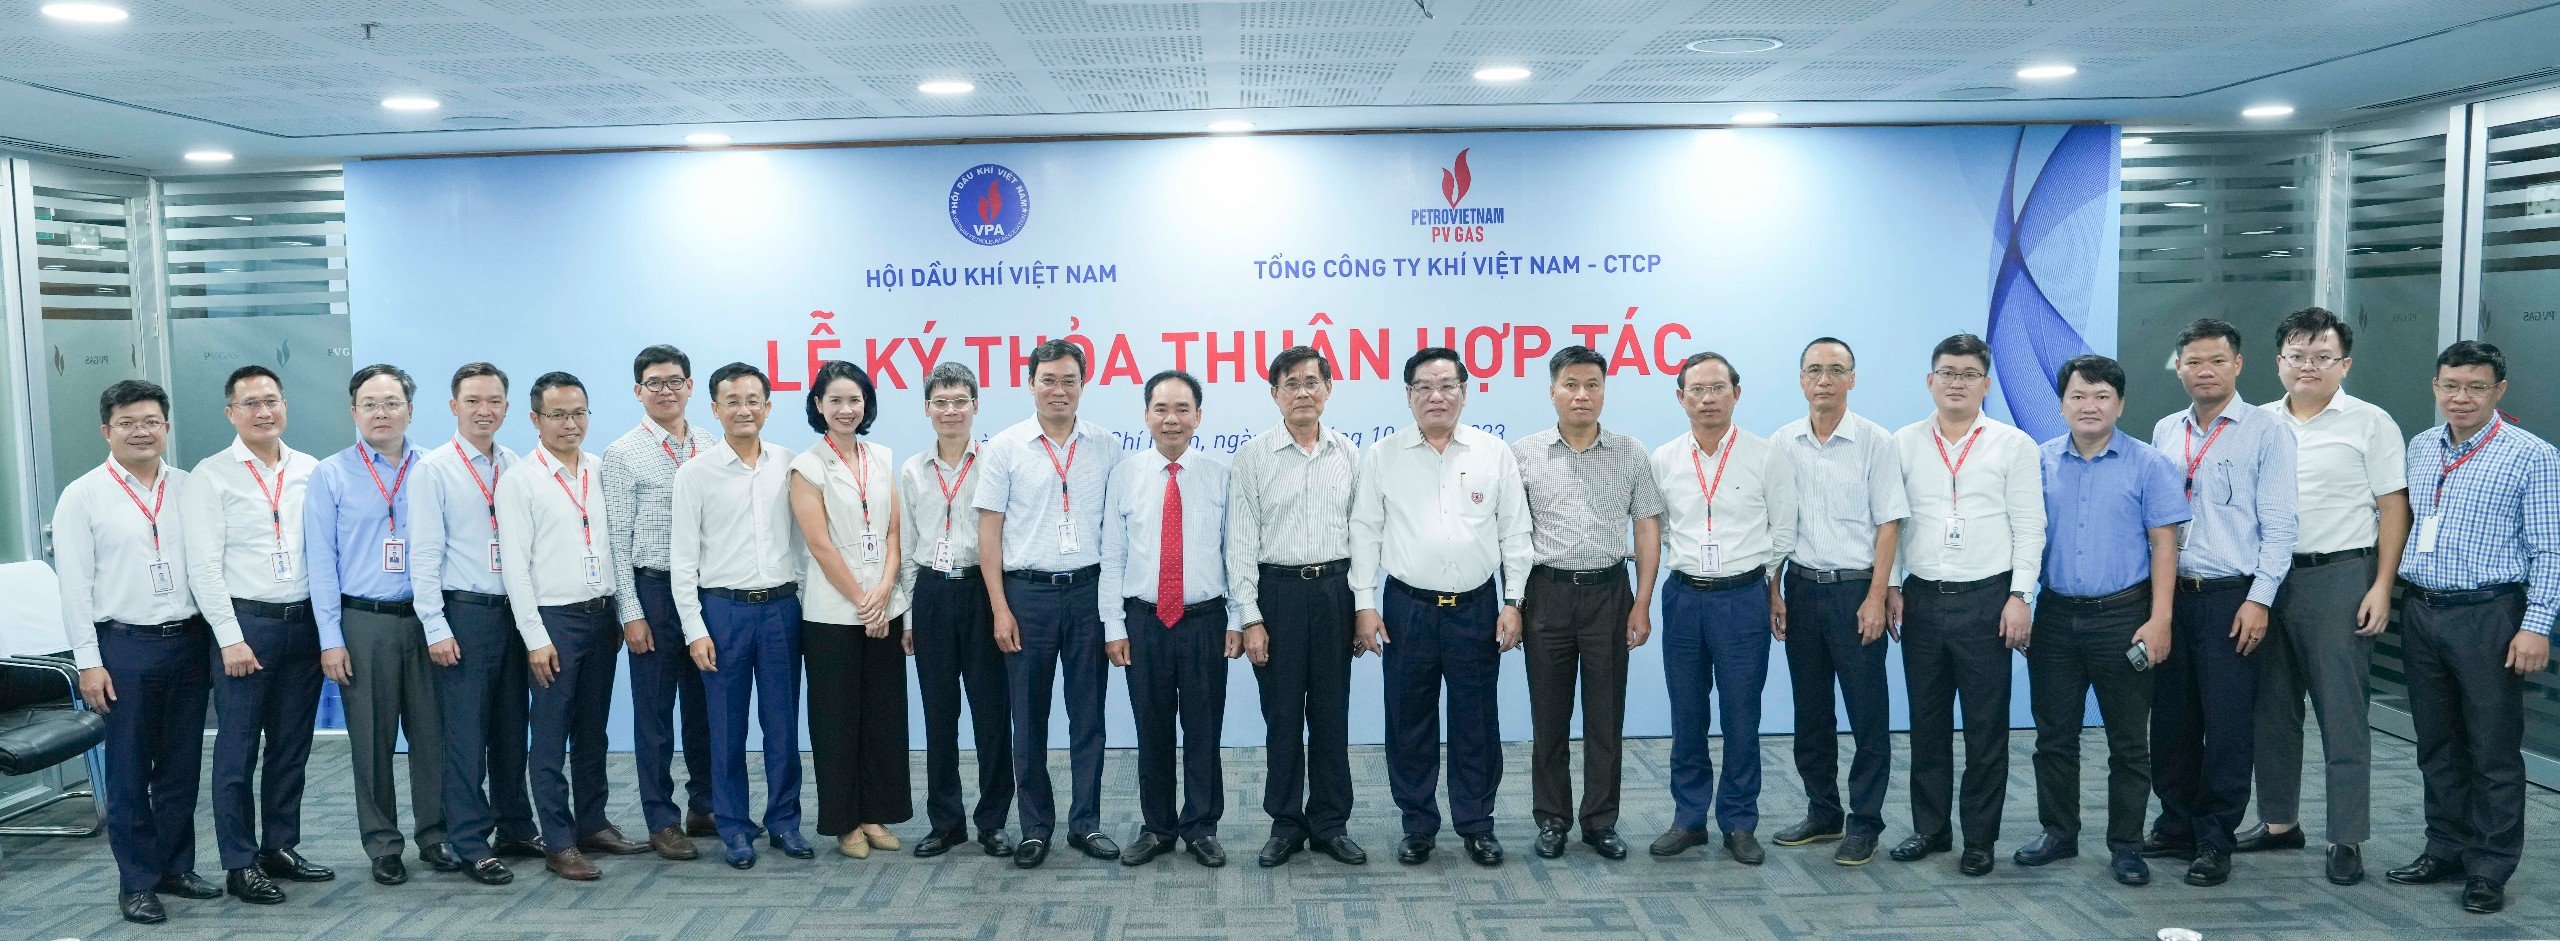 Tổng công ty Khí Việt Nam cùng Hội Dầu khí Việt Nam ký thỏa thuận hợp tác